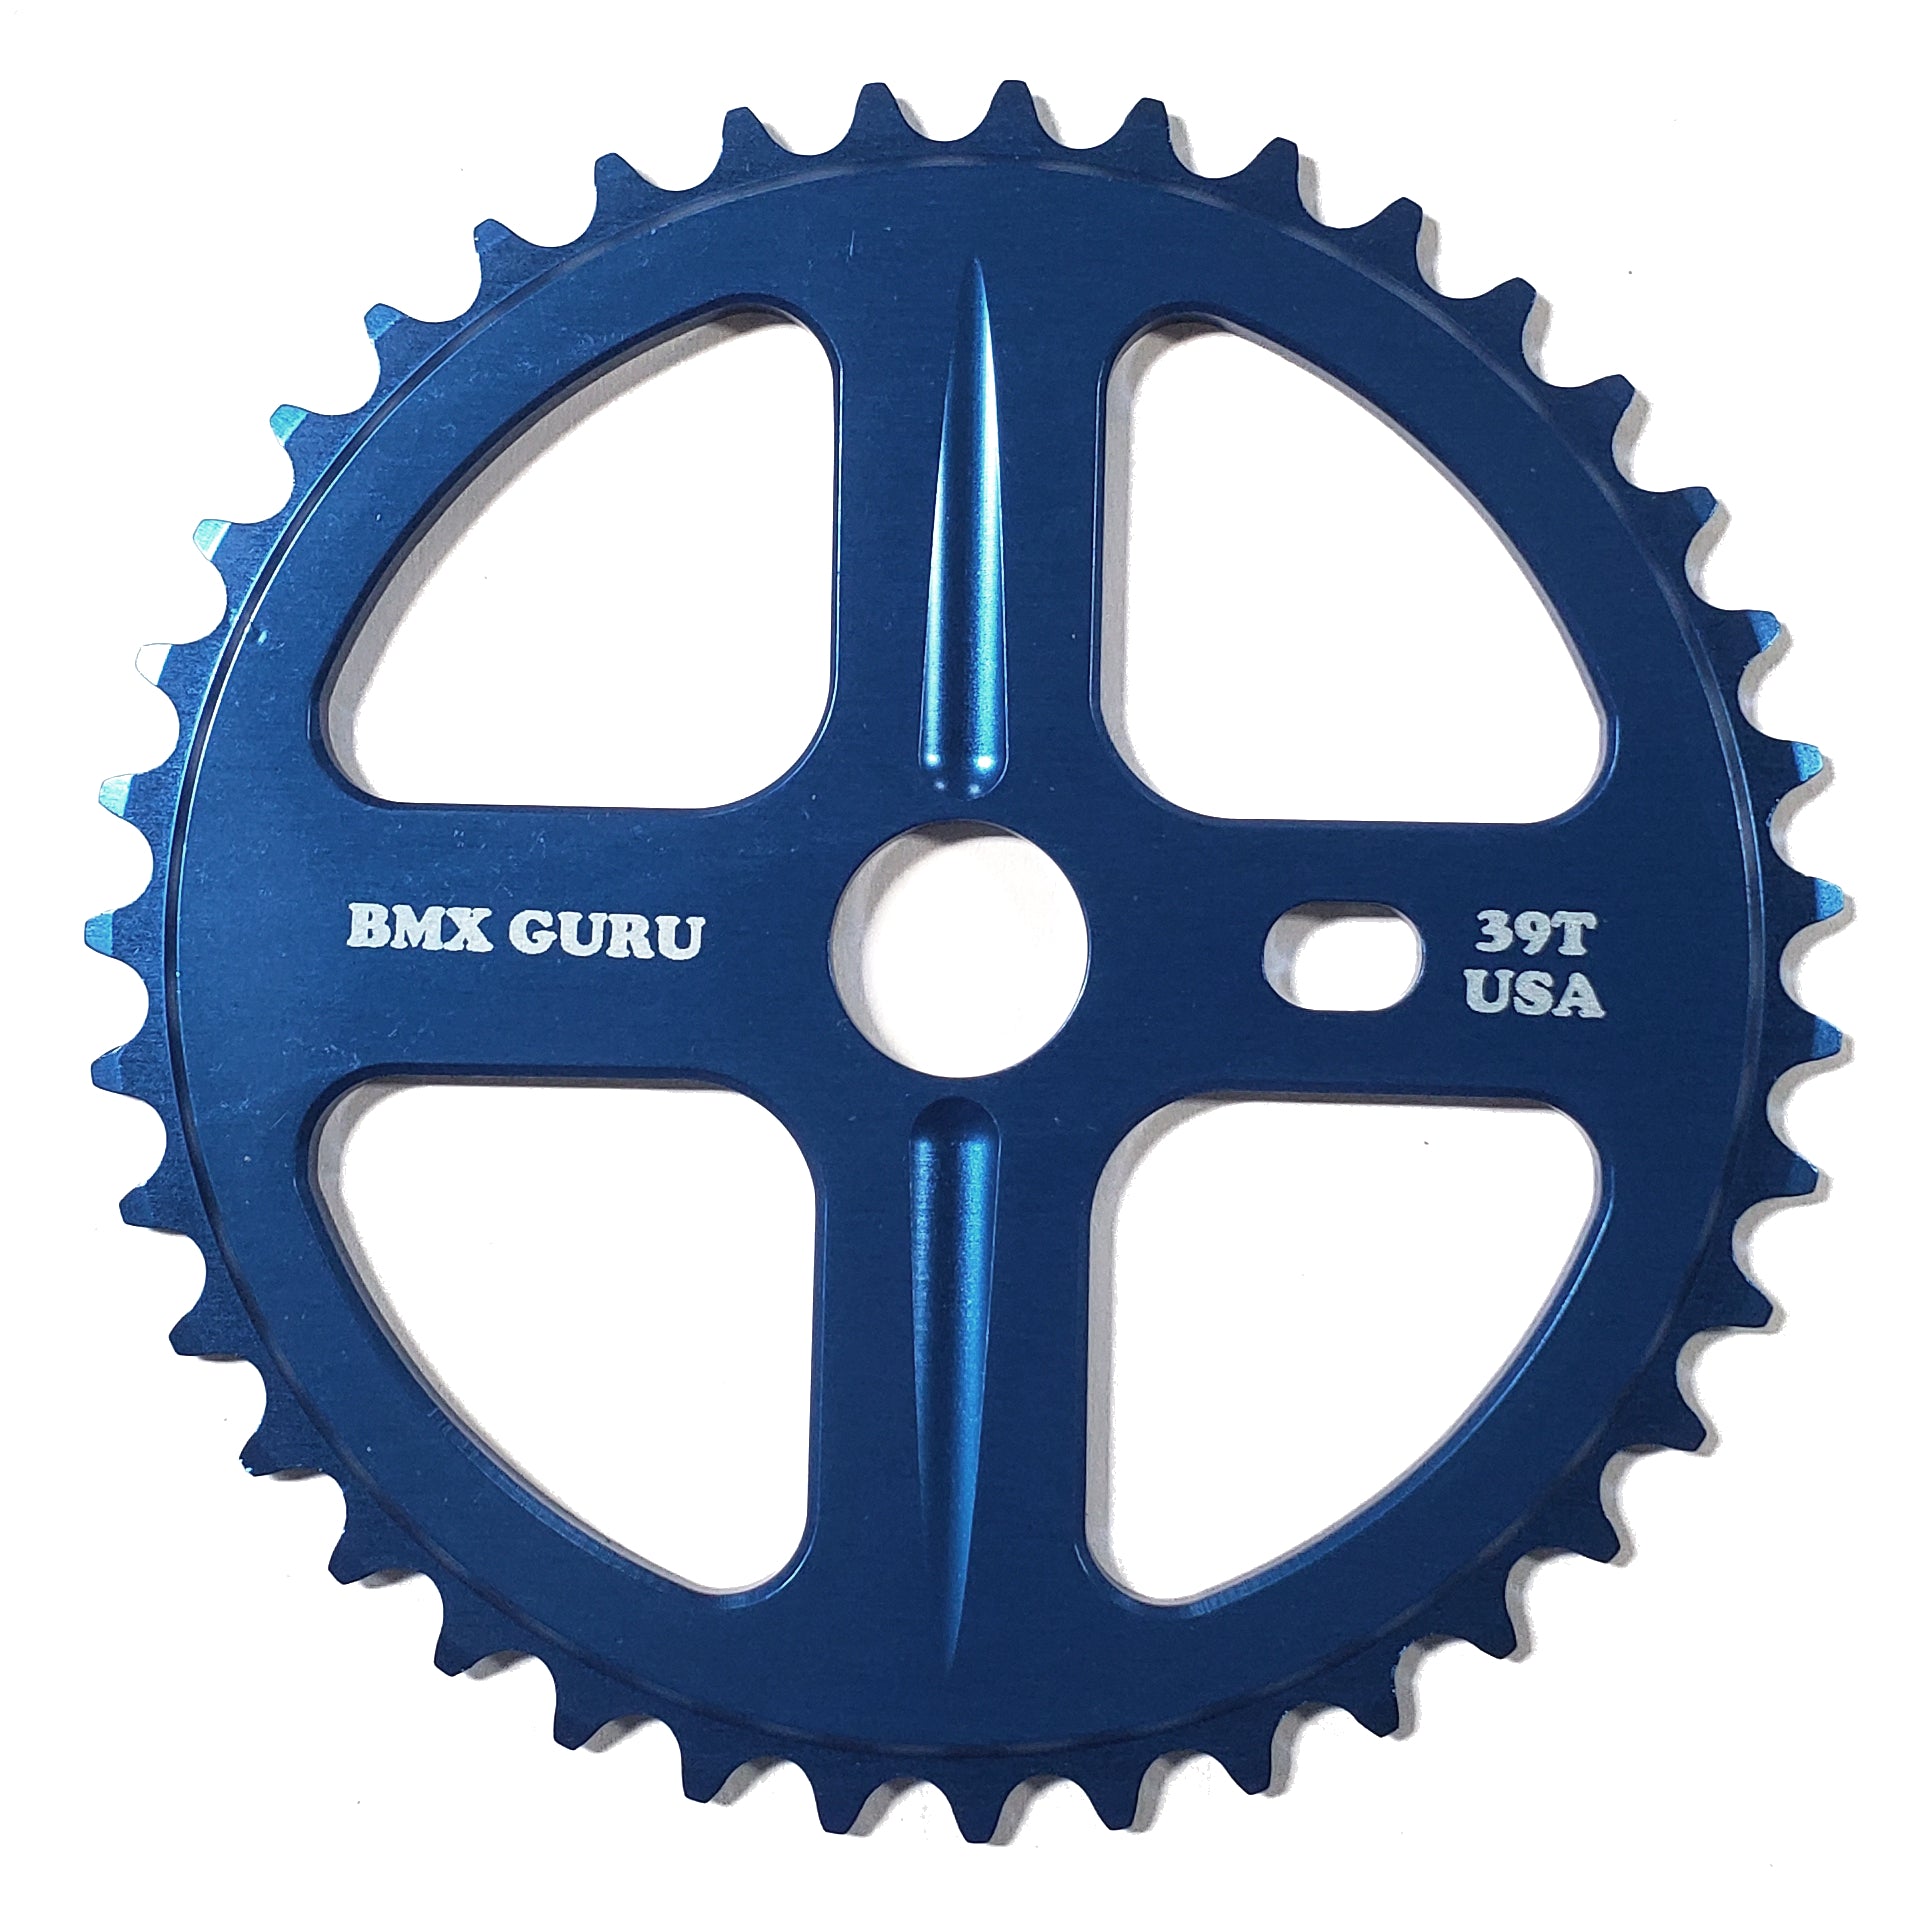 BMXGuru 39t Bolt Drive BMX Aluminum Sprocket / Chainwheel - Blue - USA Made